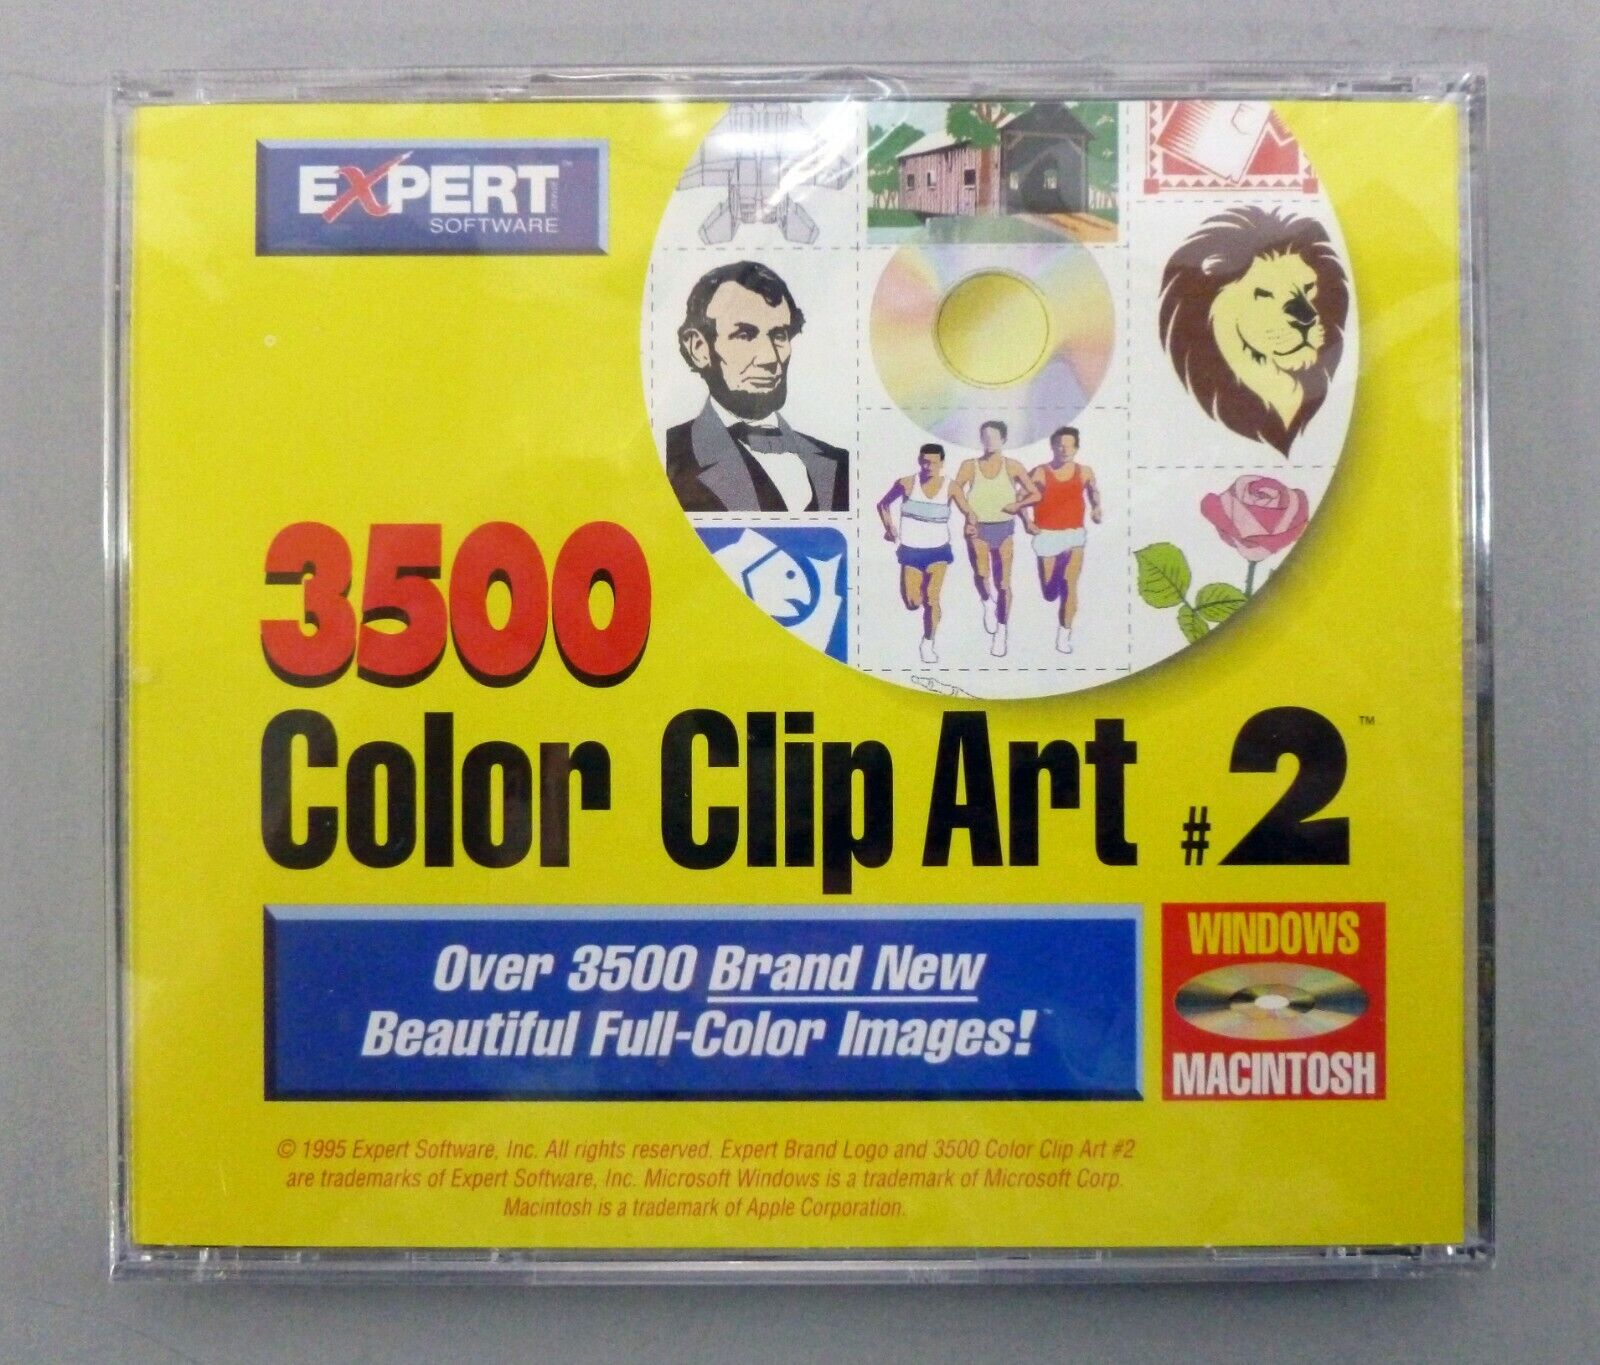 Vintage Expert 3500 Color Clip Art # 2 CD